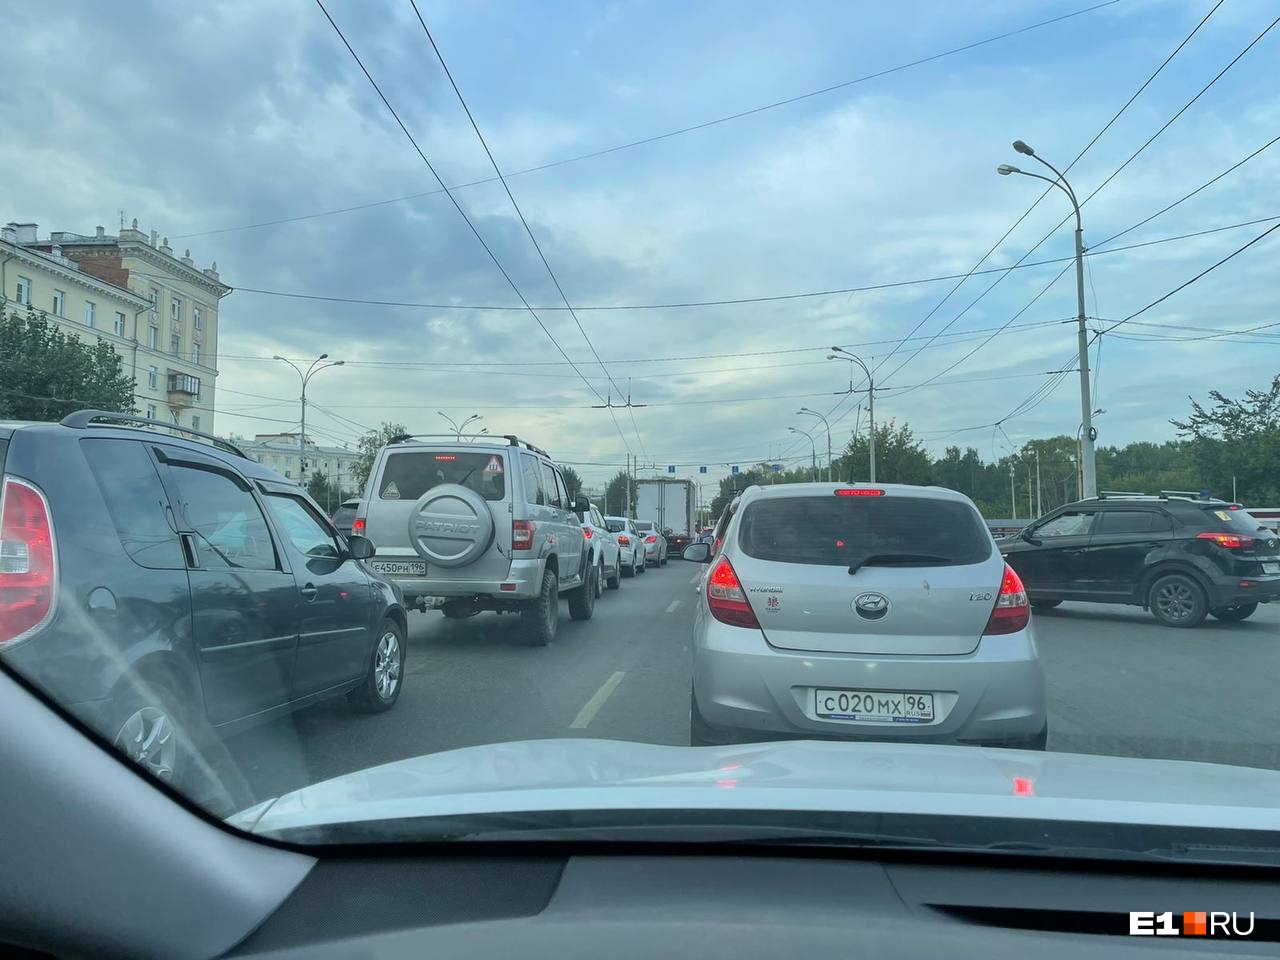 Встали! В Екатеринбург вернулись адские пробки — и тут же взлетели цены на такси